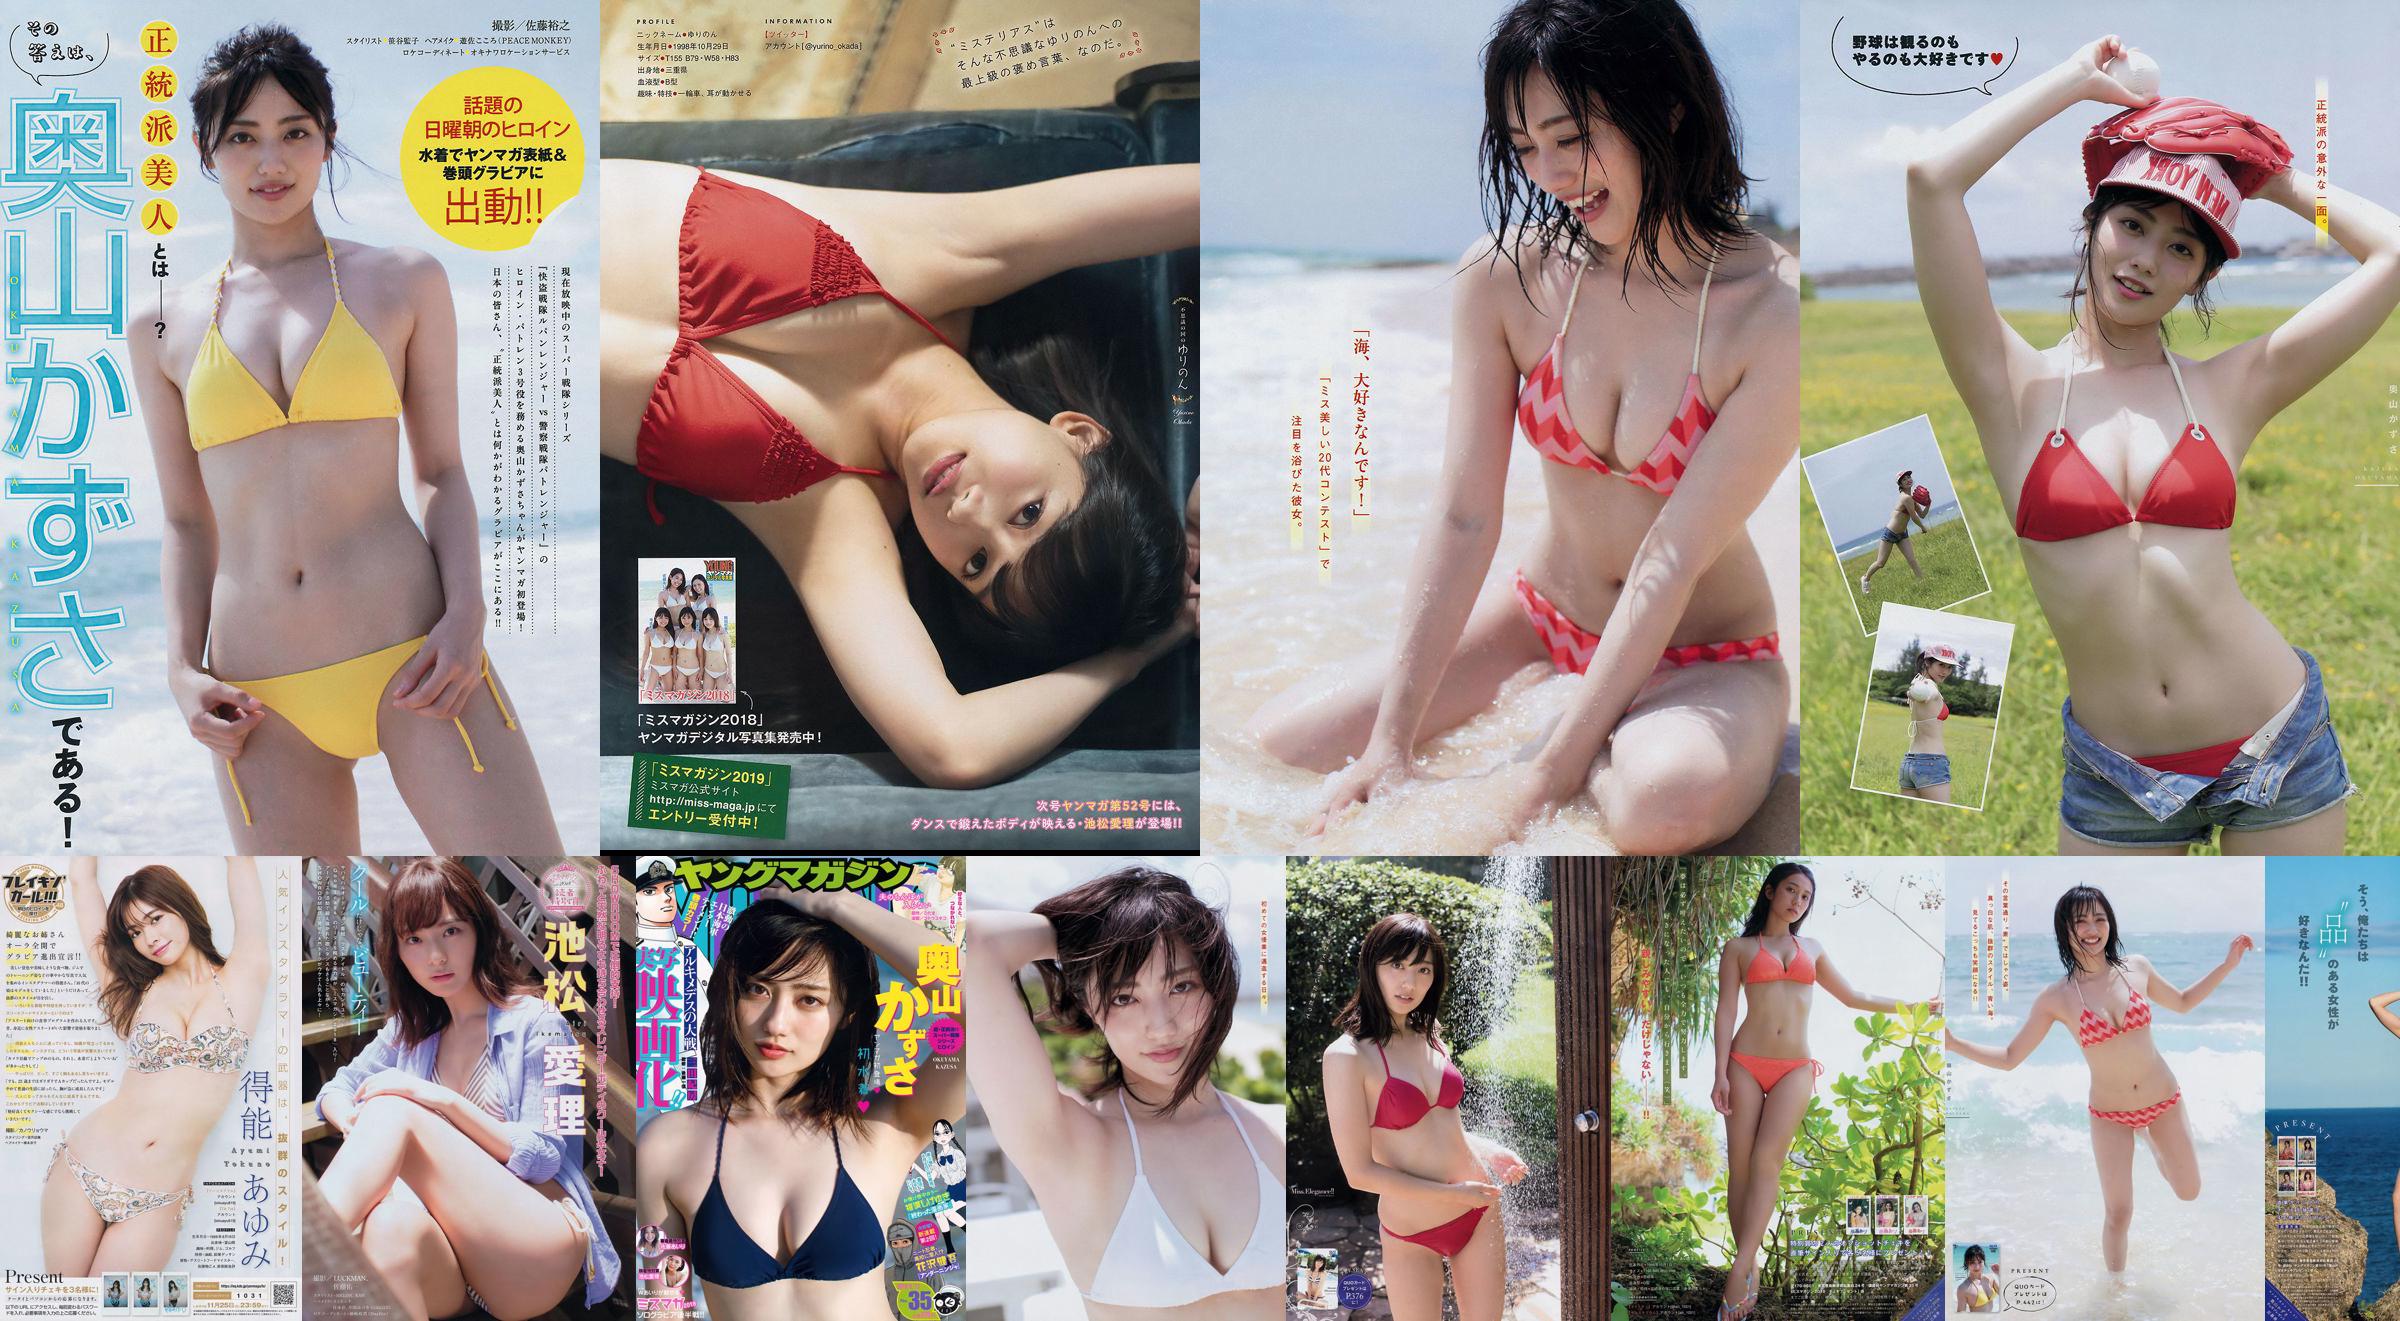 [Young Magazine] Kazusa Okuyama Airi Sato Airi Ikematsu 2018 No.35 Foto Mori No.a9ac81 Pagina 7